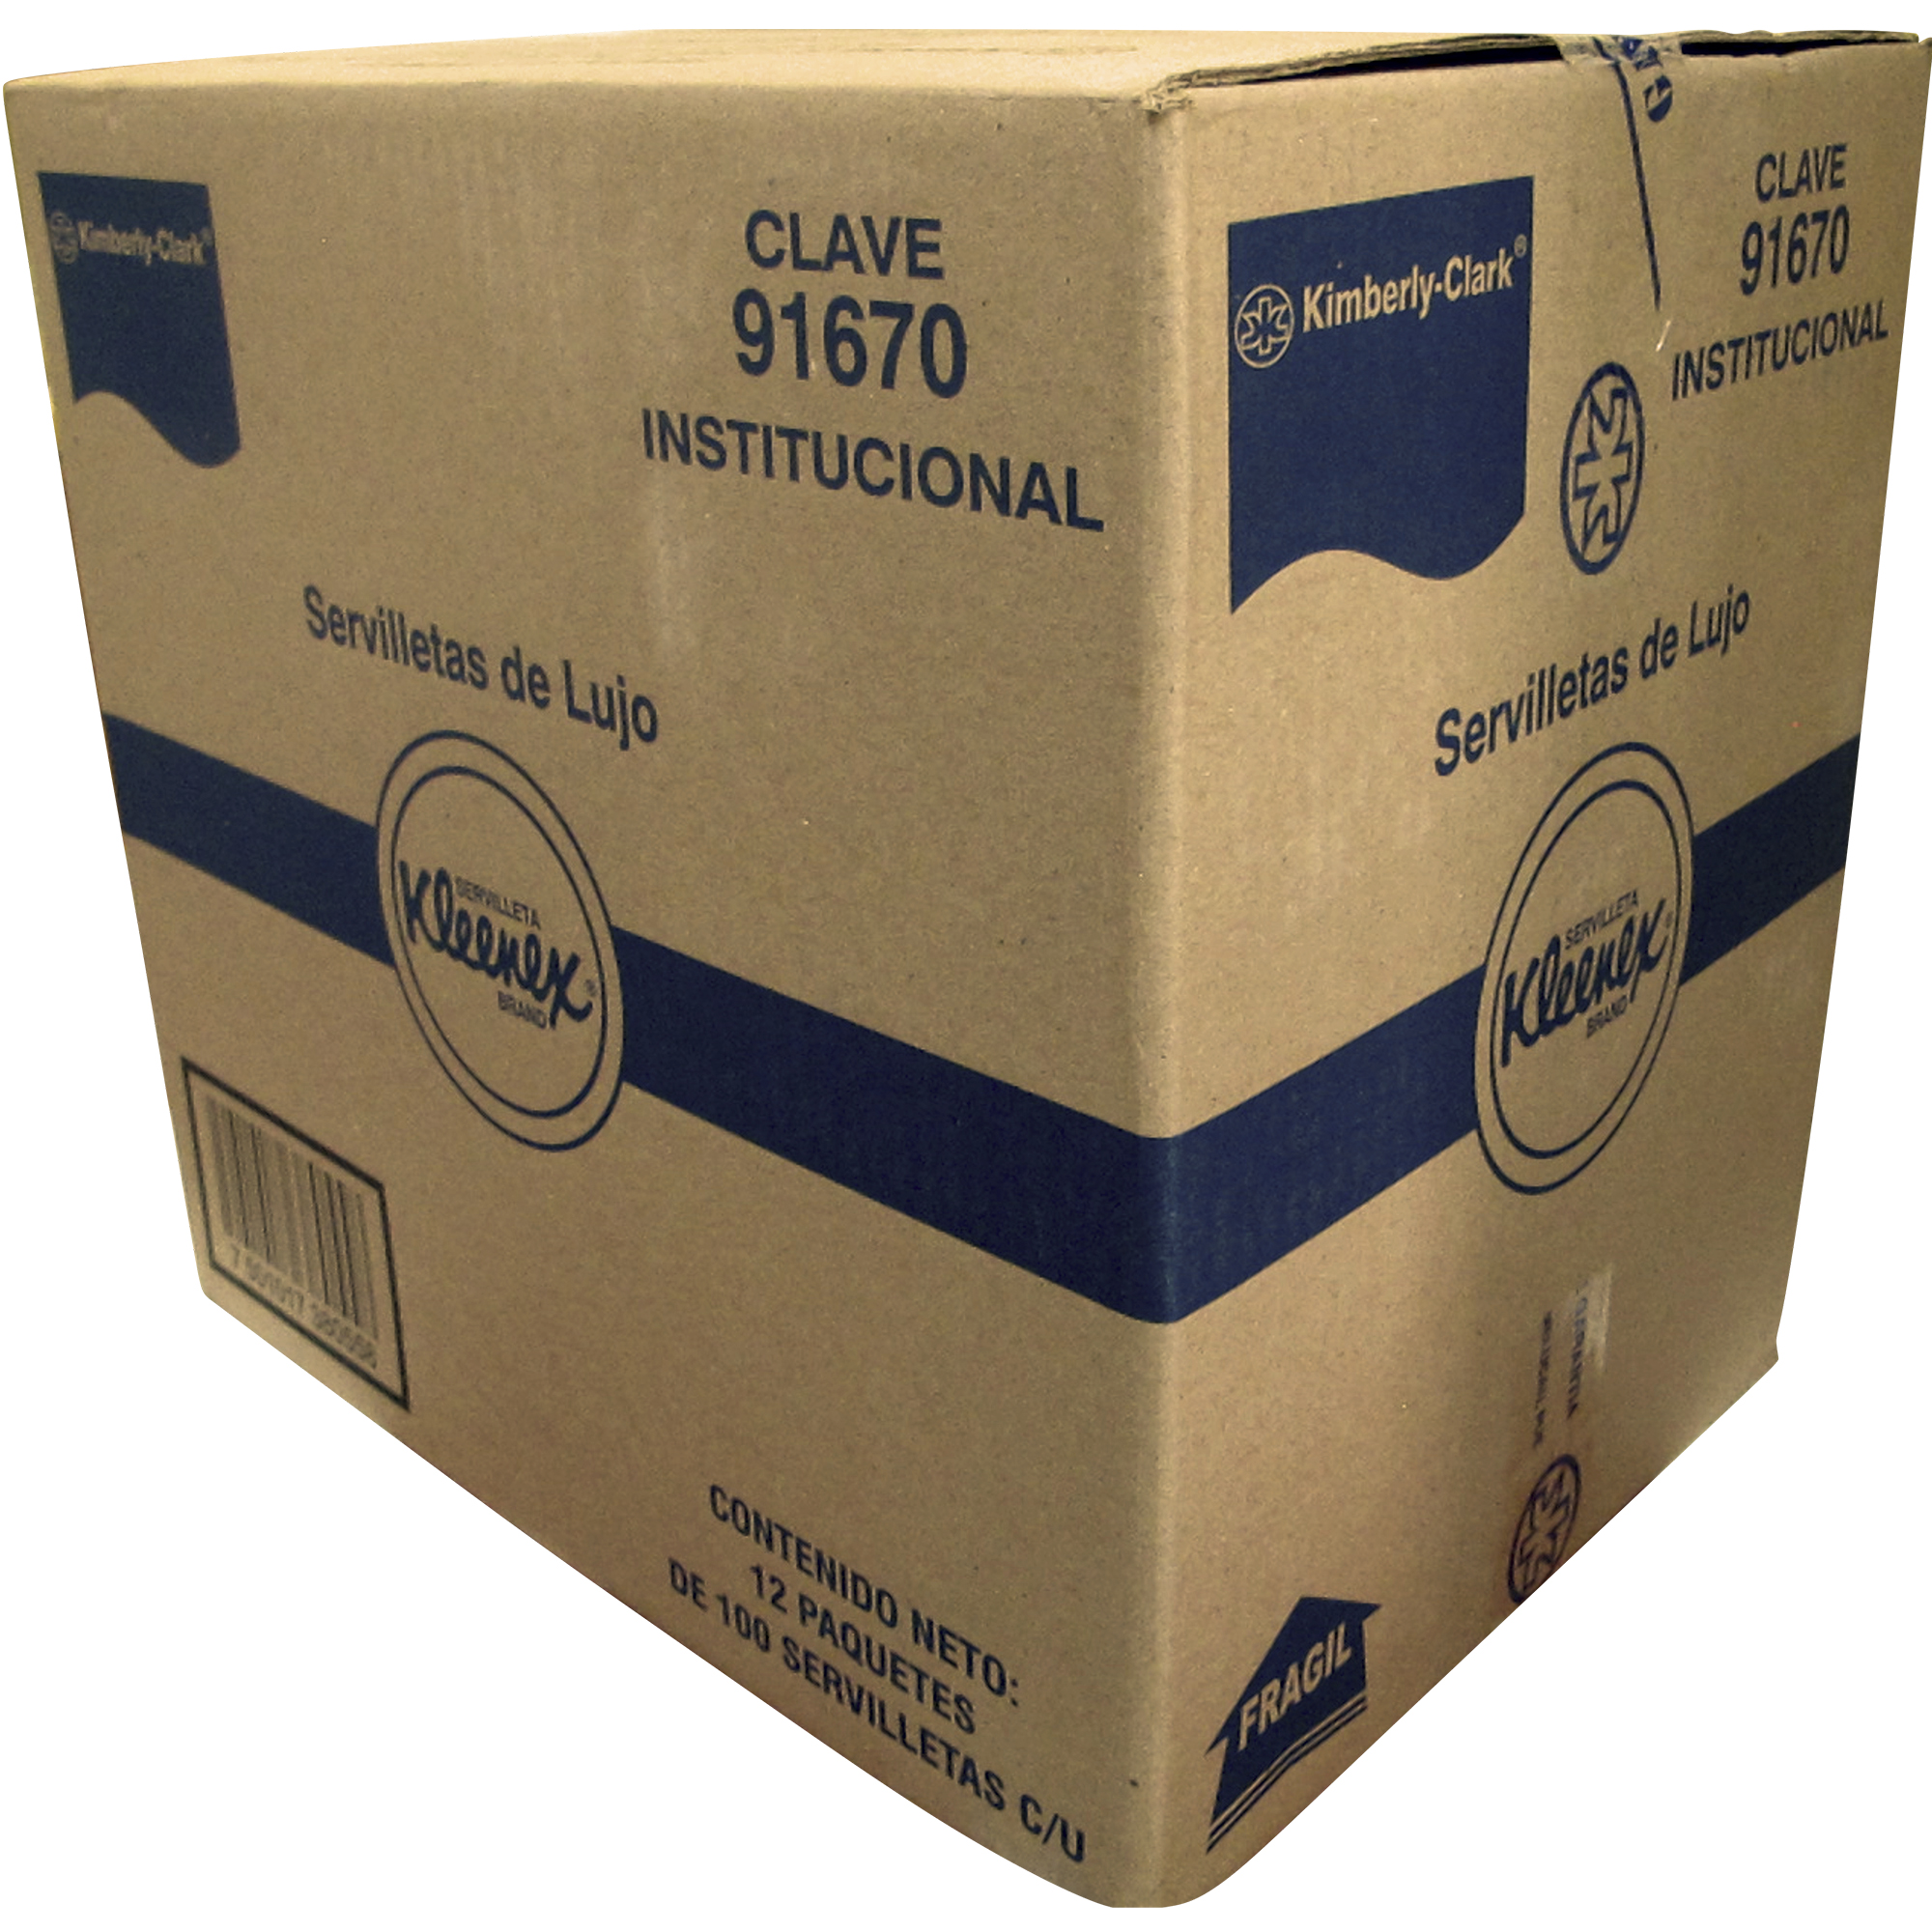 Kimberly Clark 91670 Servilleta deluxe Kleenex color blanca, caja con 12 paquetes de 100 piezas cada uno